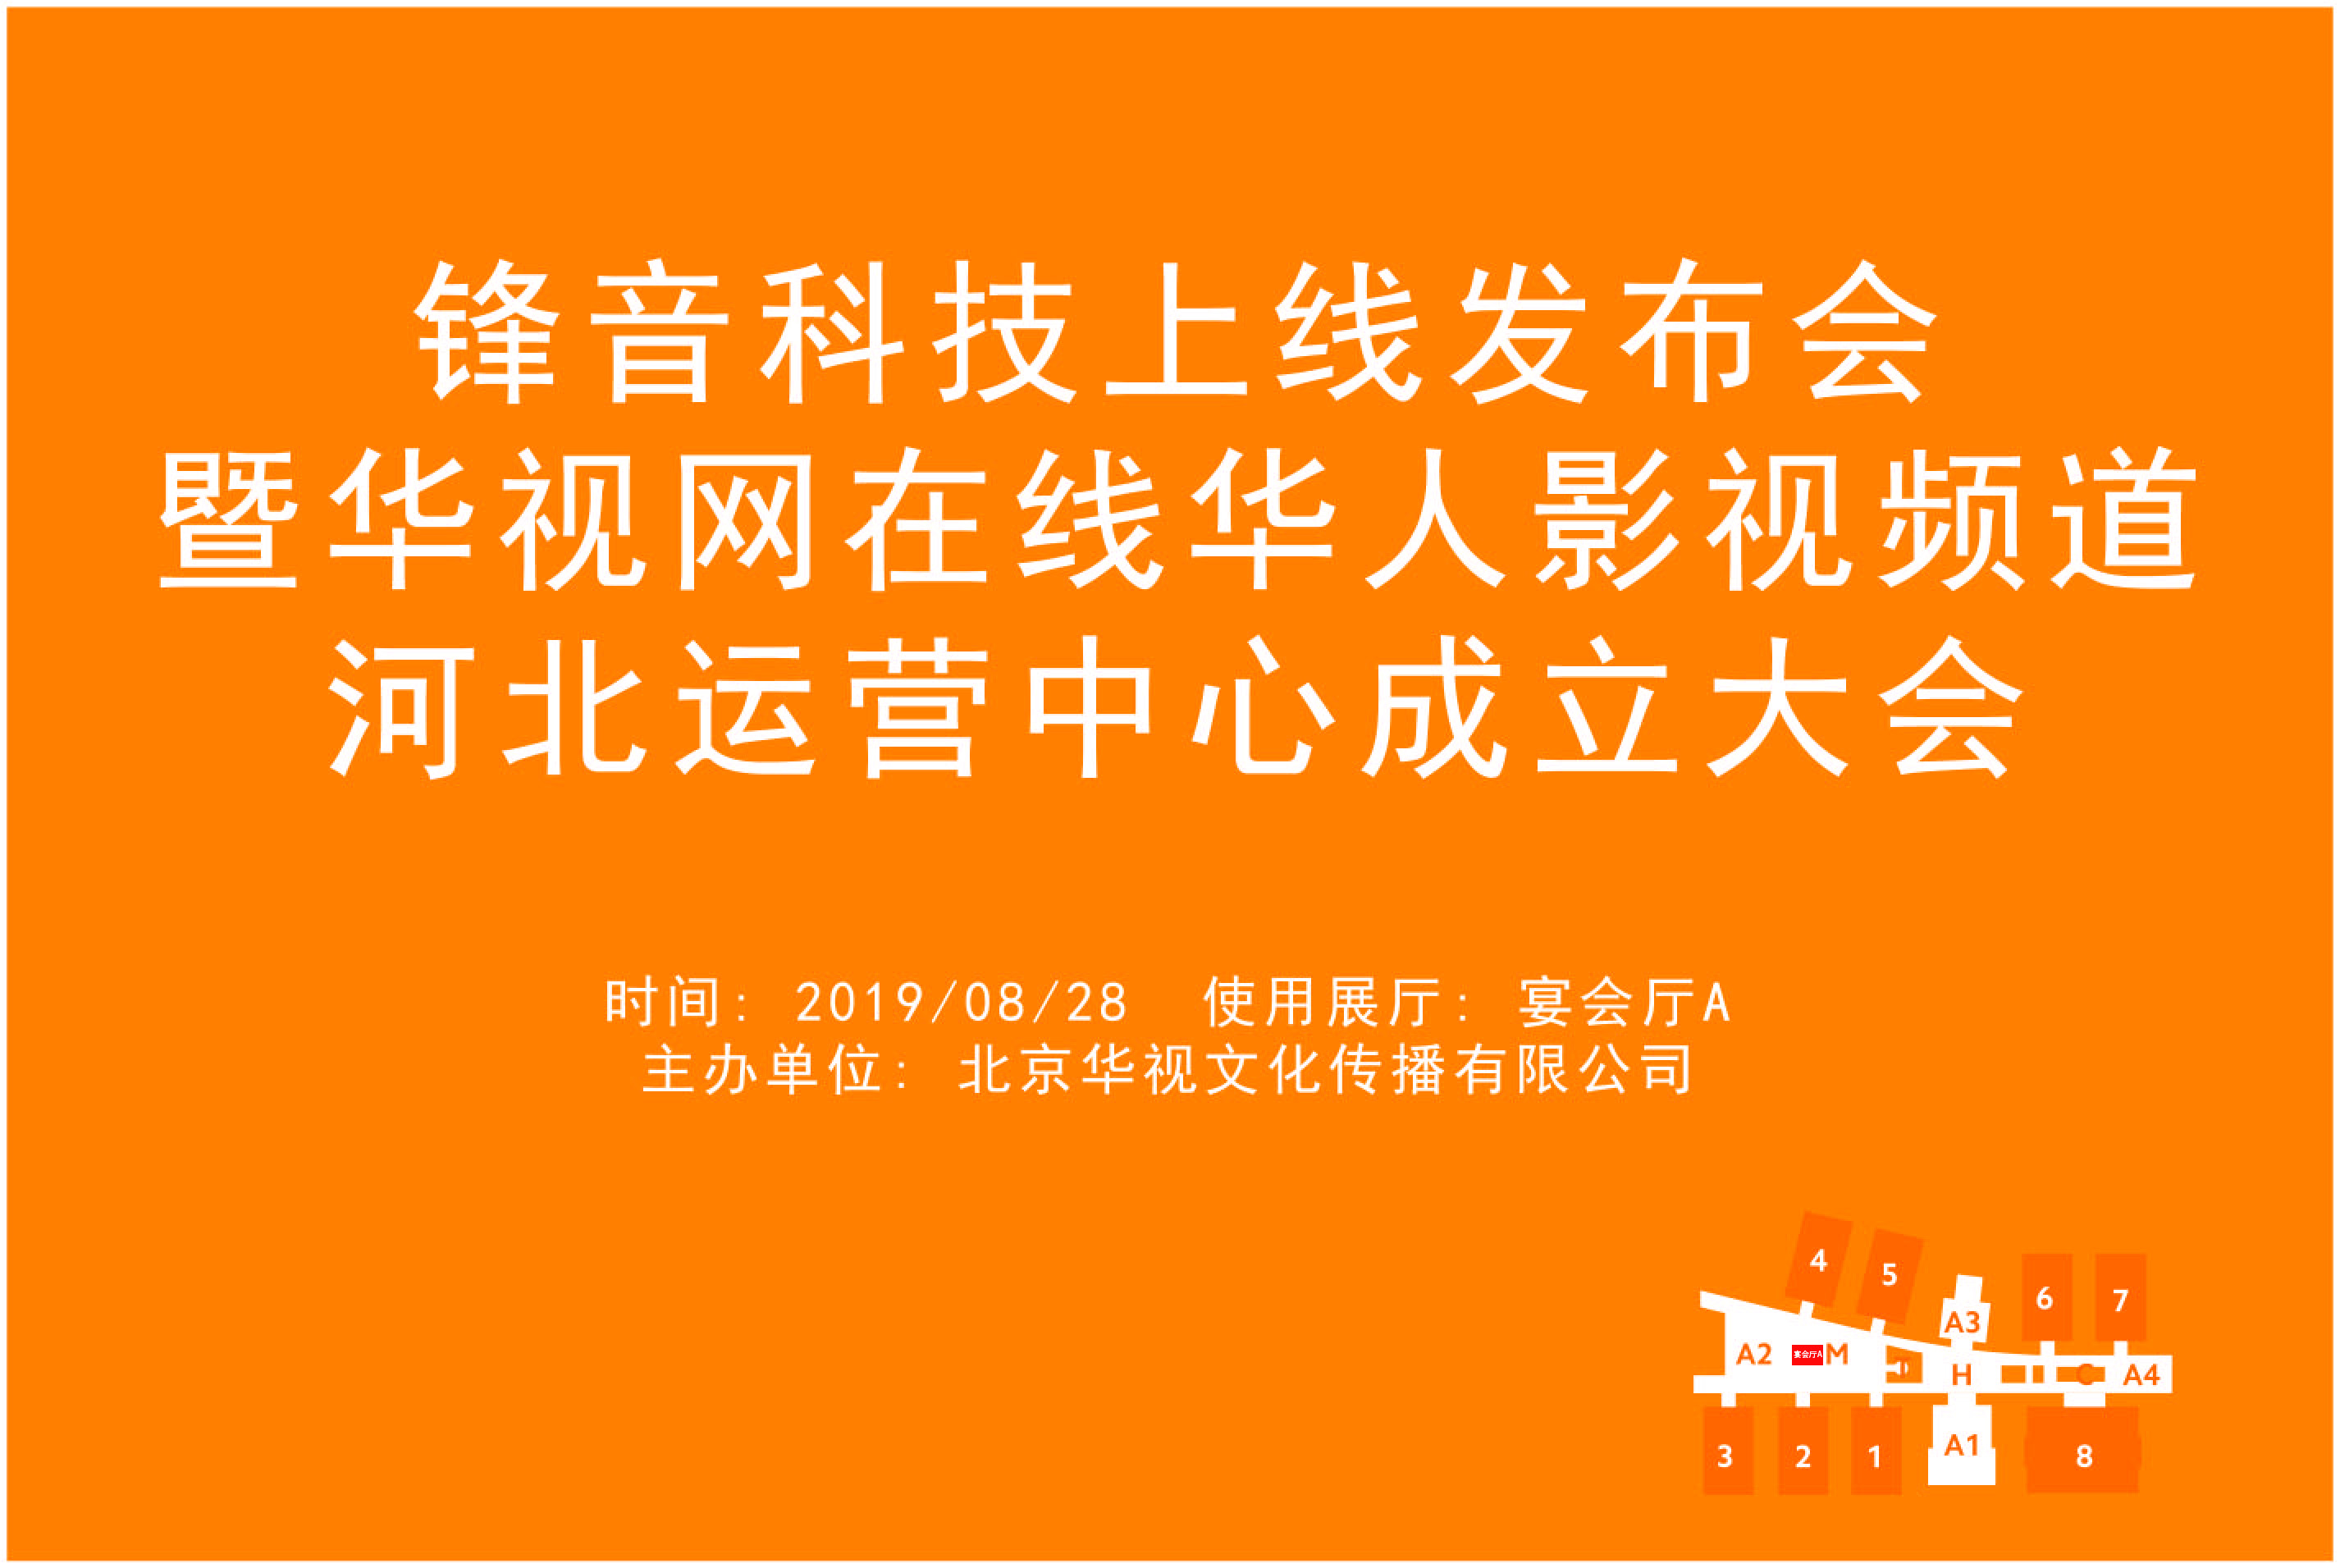 锋音科技上线发布会暨华视网在线华人影视频道河北运营中心成立大会